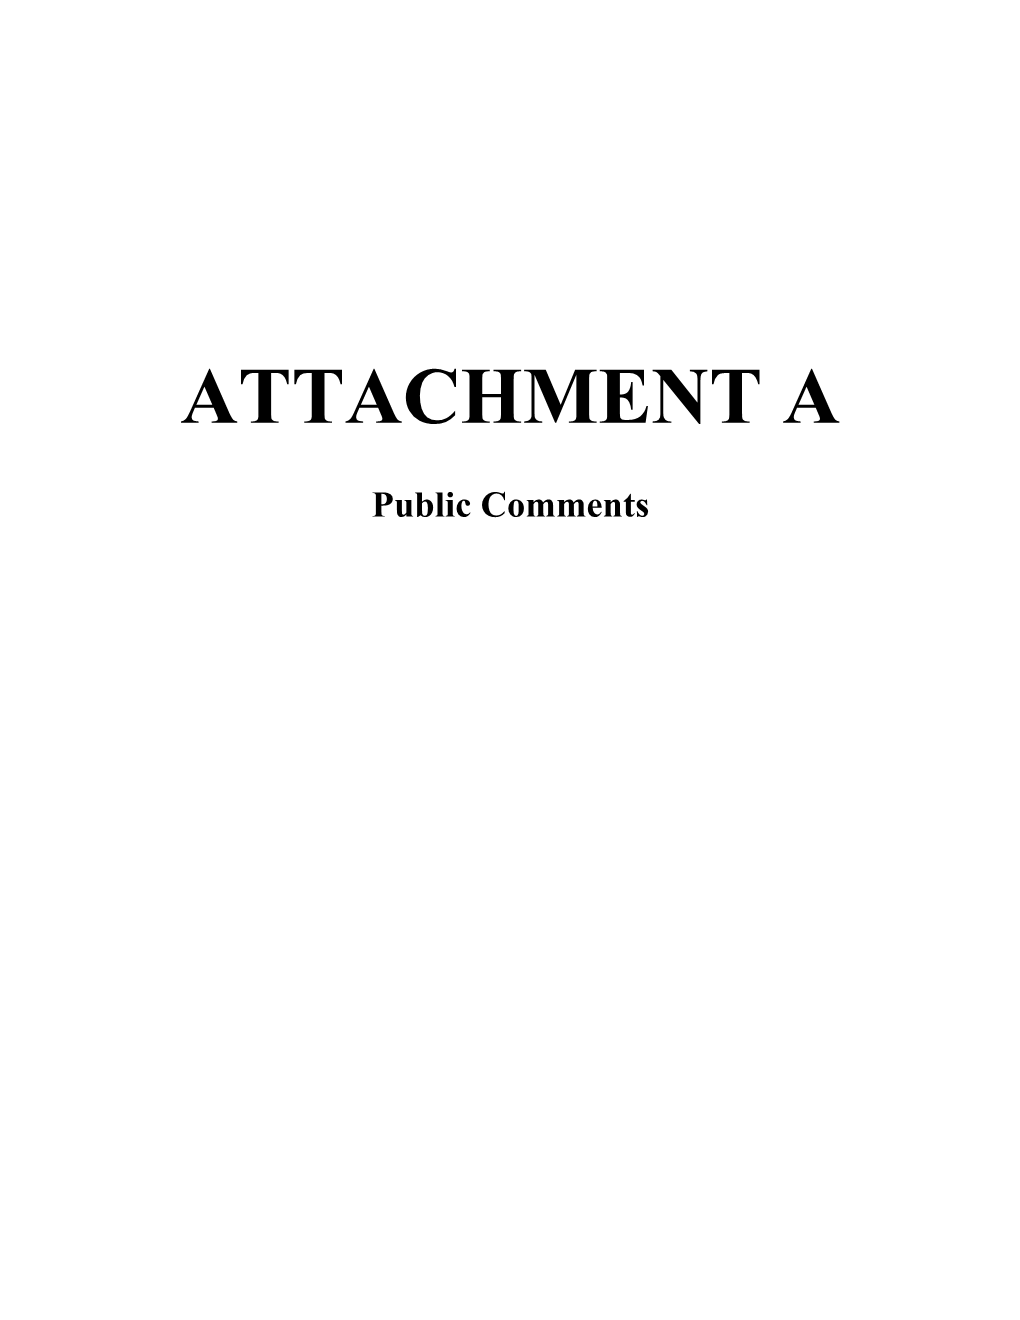 Attachment A